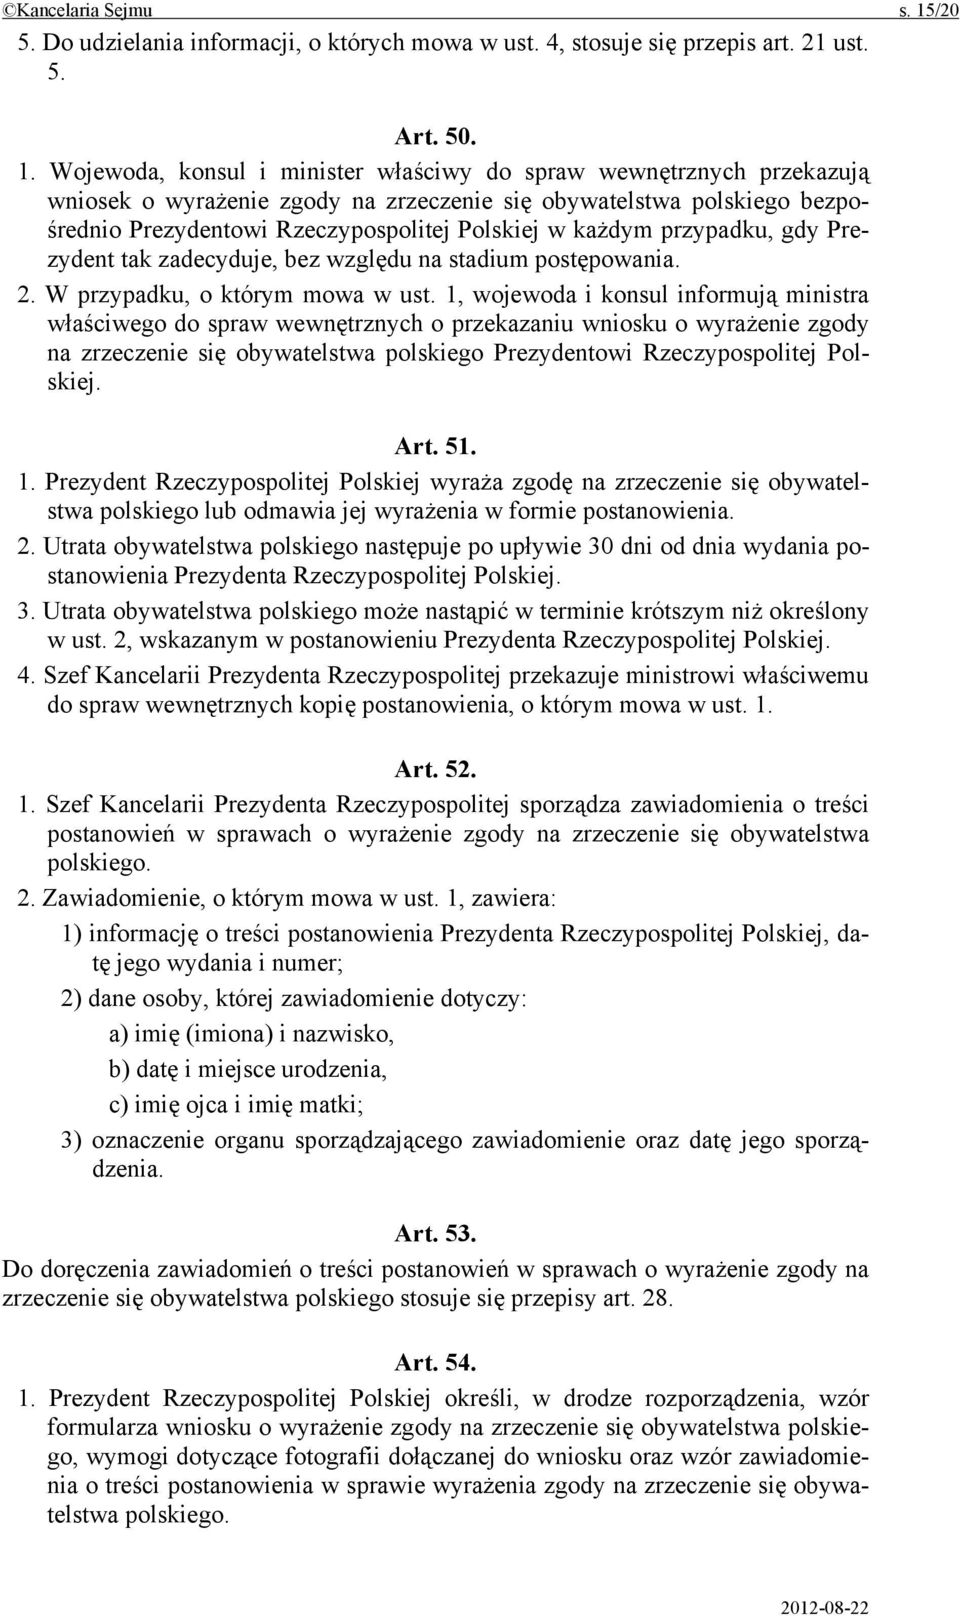 Wojewoda, konsul i minister właściwy do spraw wewnętrznych przekazują wniosek o wyrażenie zgody na zrzeczenie się obywatelstwa polskiego bezpośrednio Prezydentowi Rzeczypospolitej Polskiej w każdym